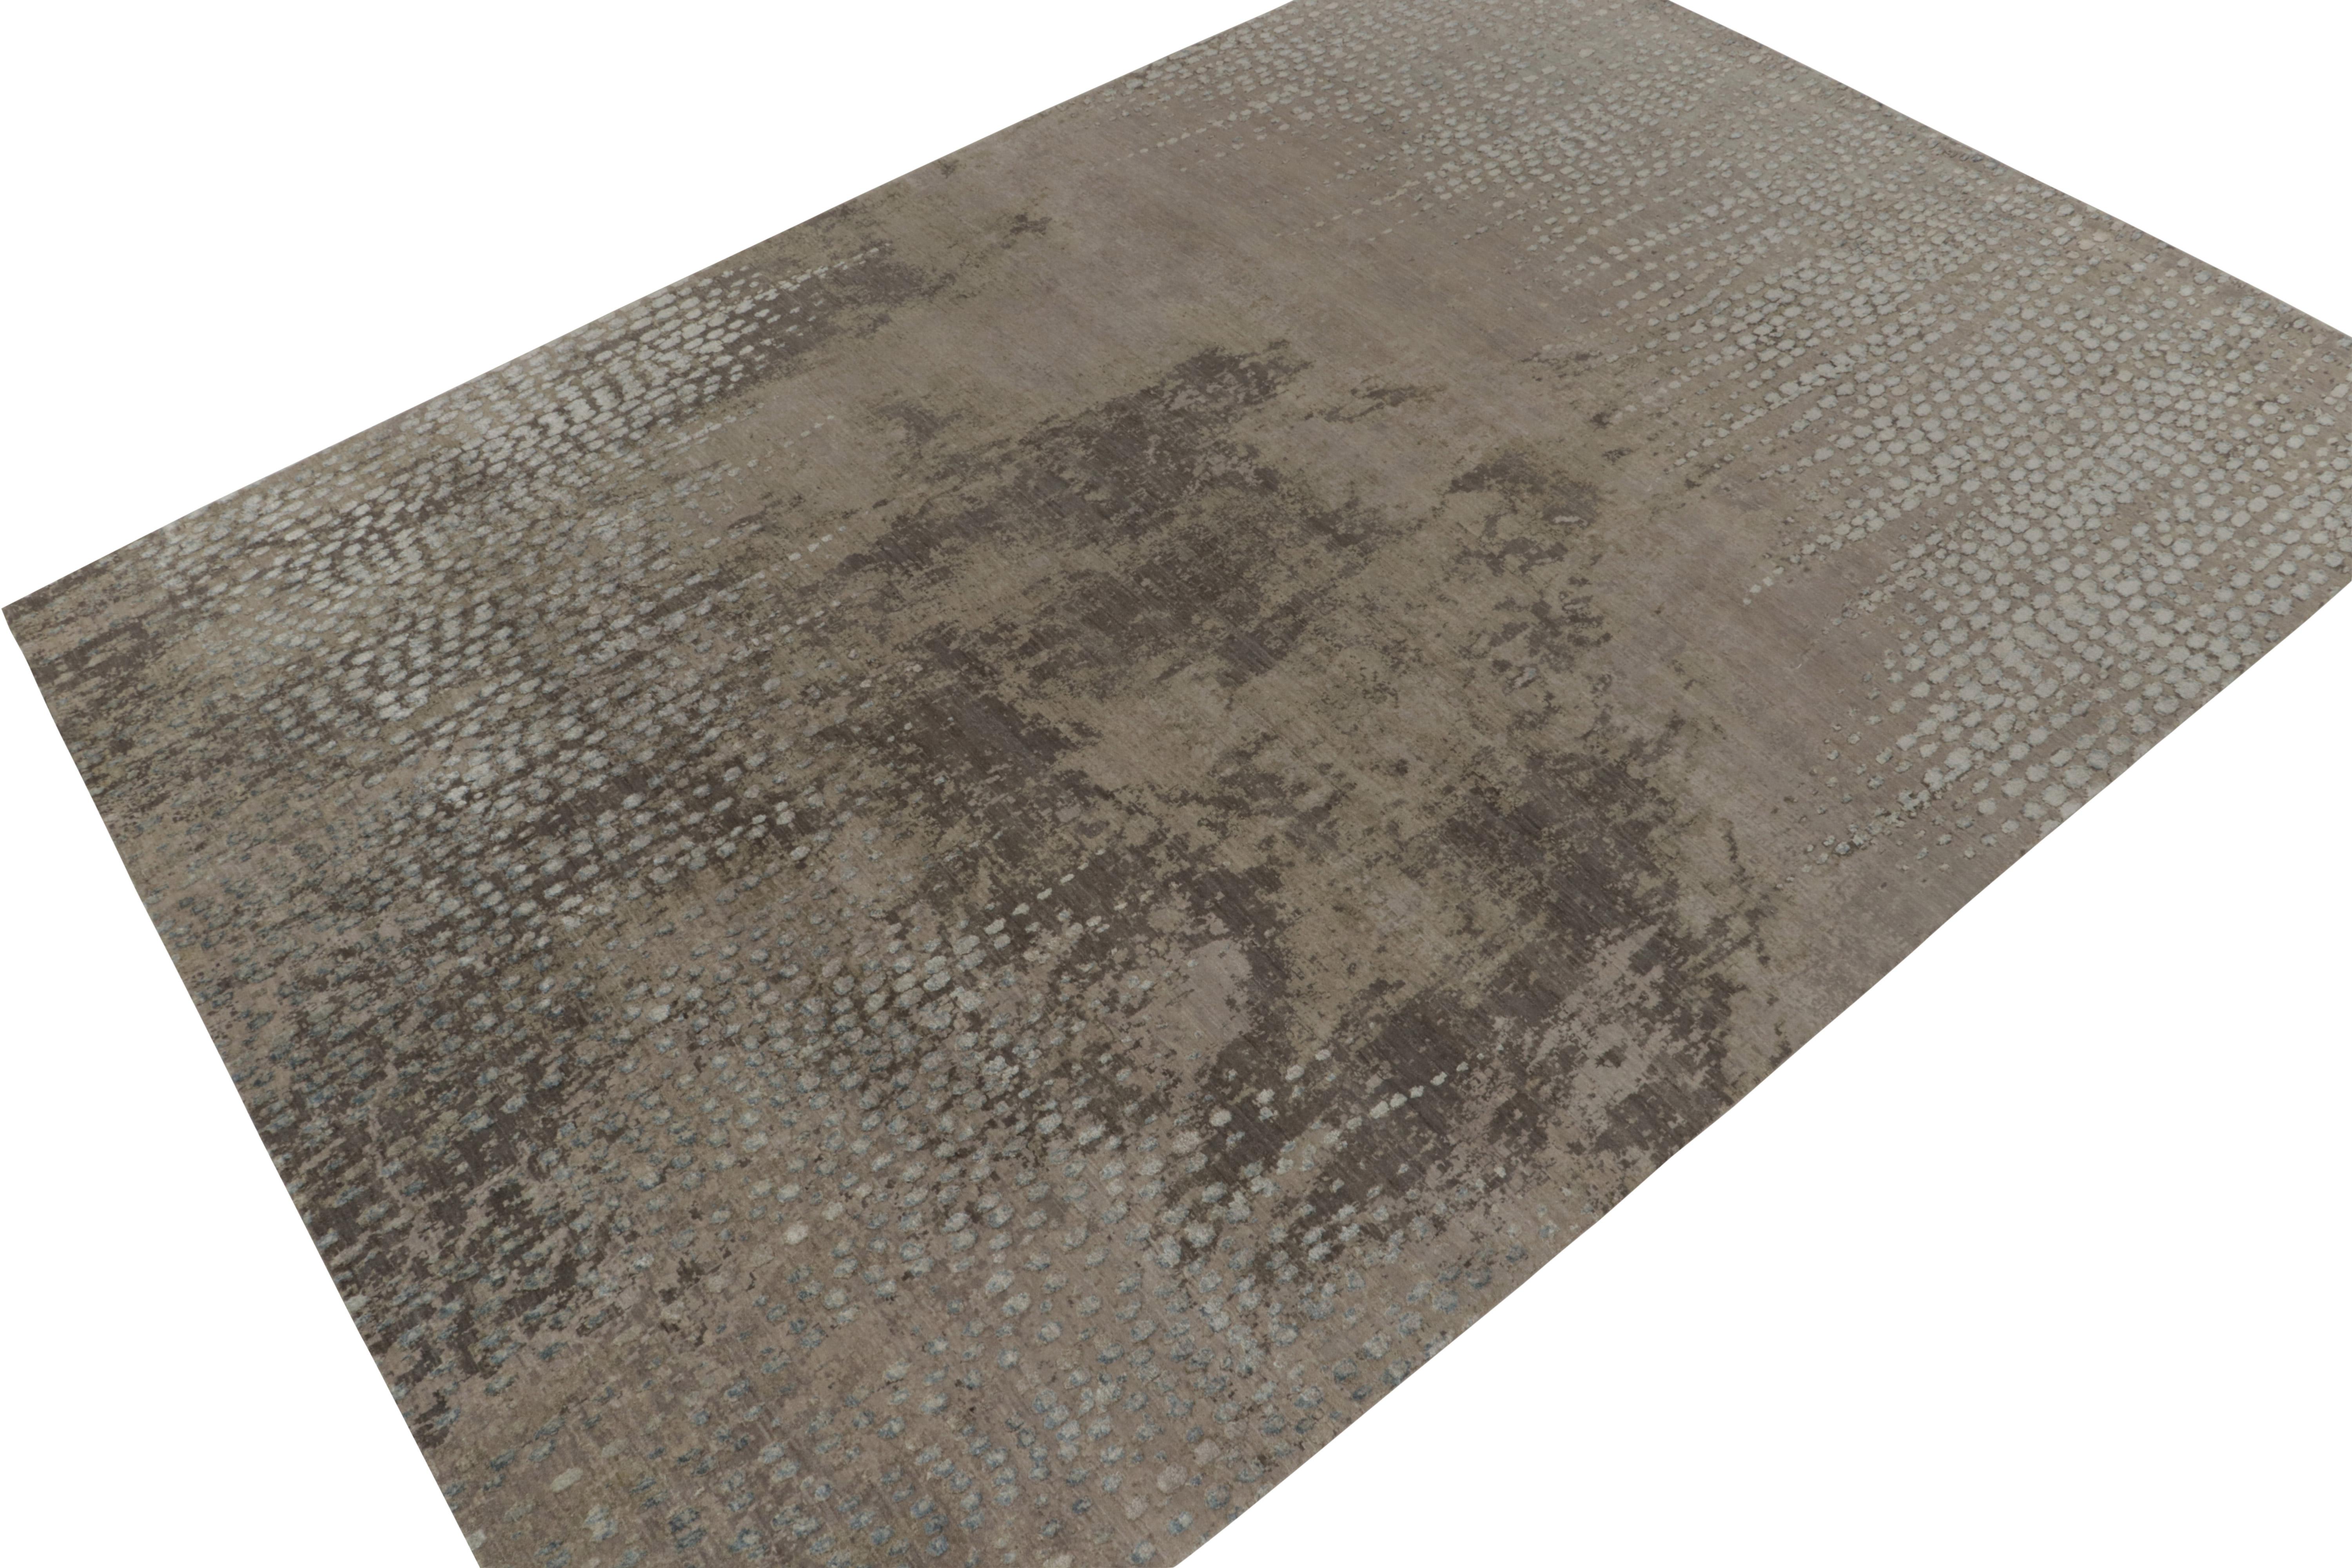 Rug & Kilim's präsentiert mit diesem 10x14 großen, handgeknüpften Teppich aus luxuriöser Wolle und Seide eine elegante neue Interpretation zeitgenössischer Ästhetik. 

Über das Design: Eine anmutige Skala beherbergt abstrakte Muster in Grau, Beige